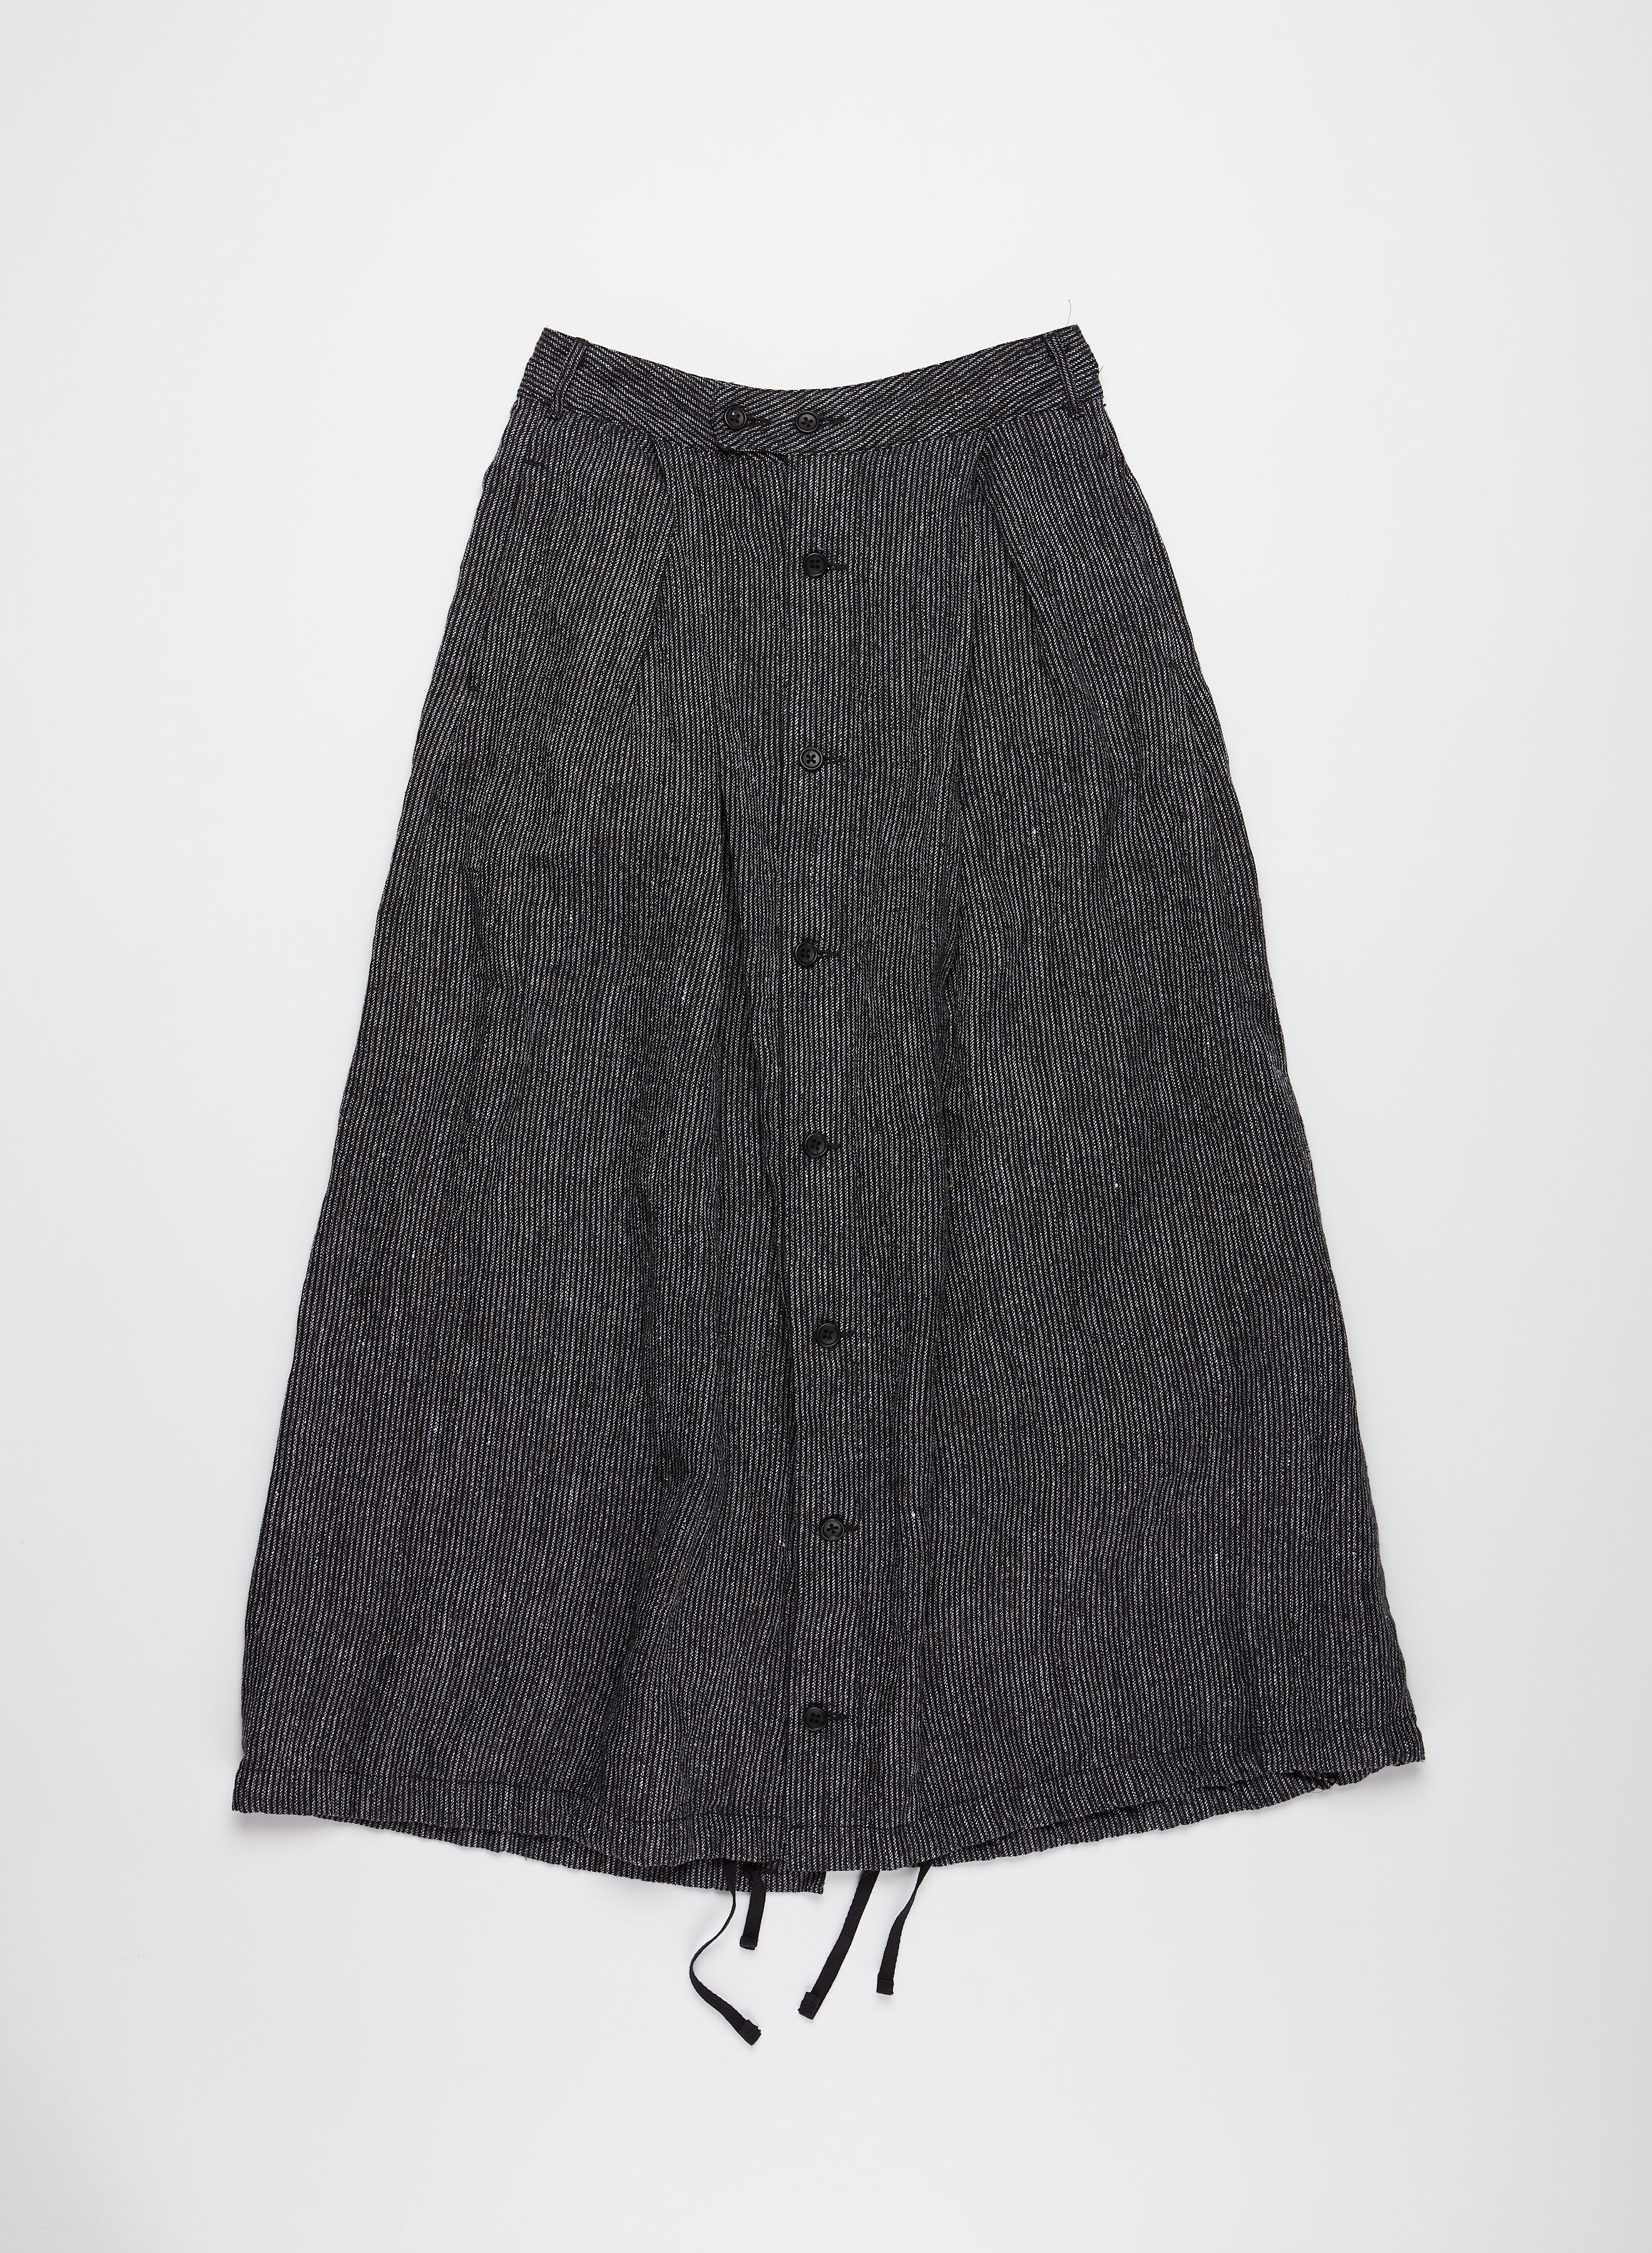 Tuck Skirt - Black / Grey Linen Stripe